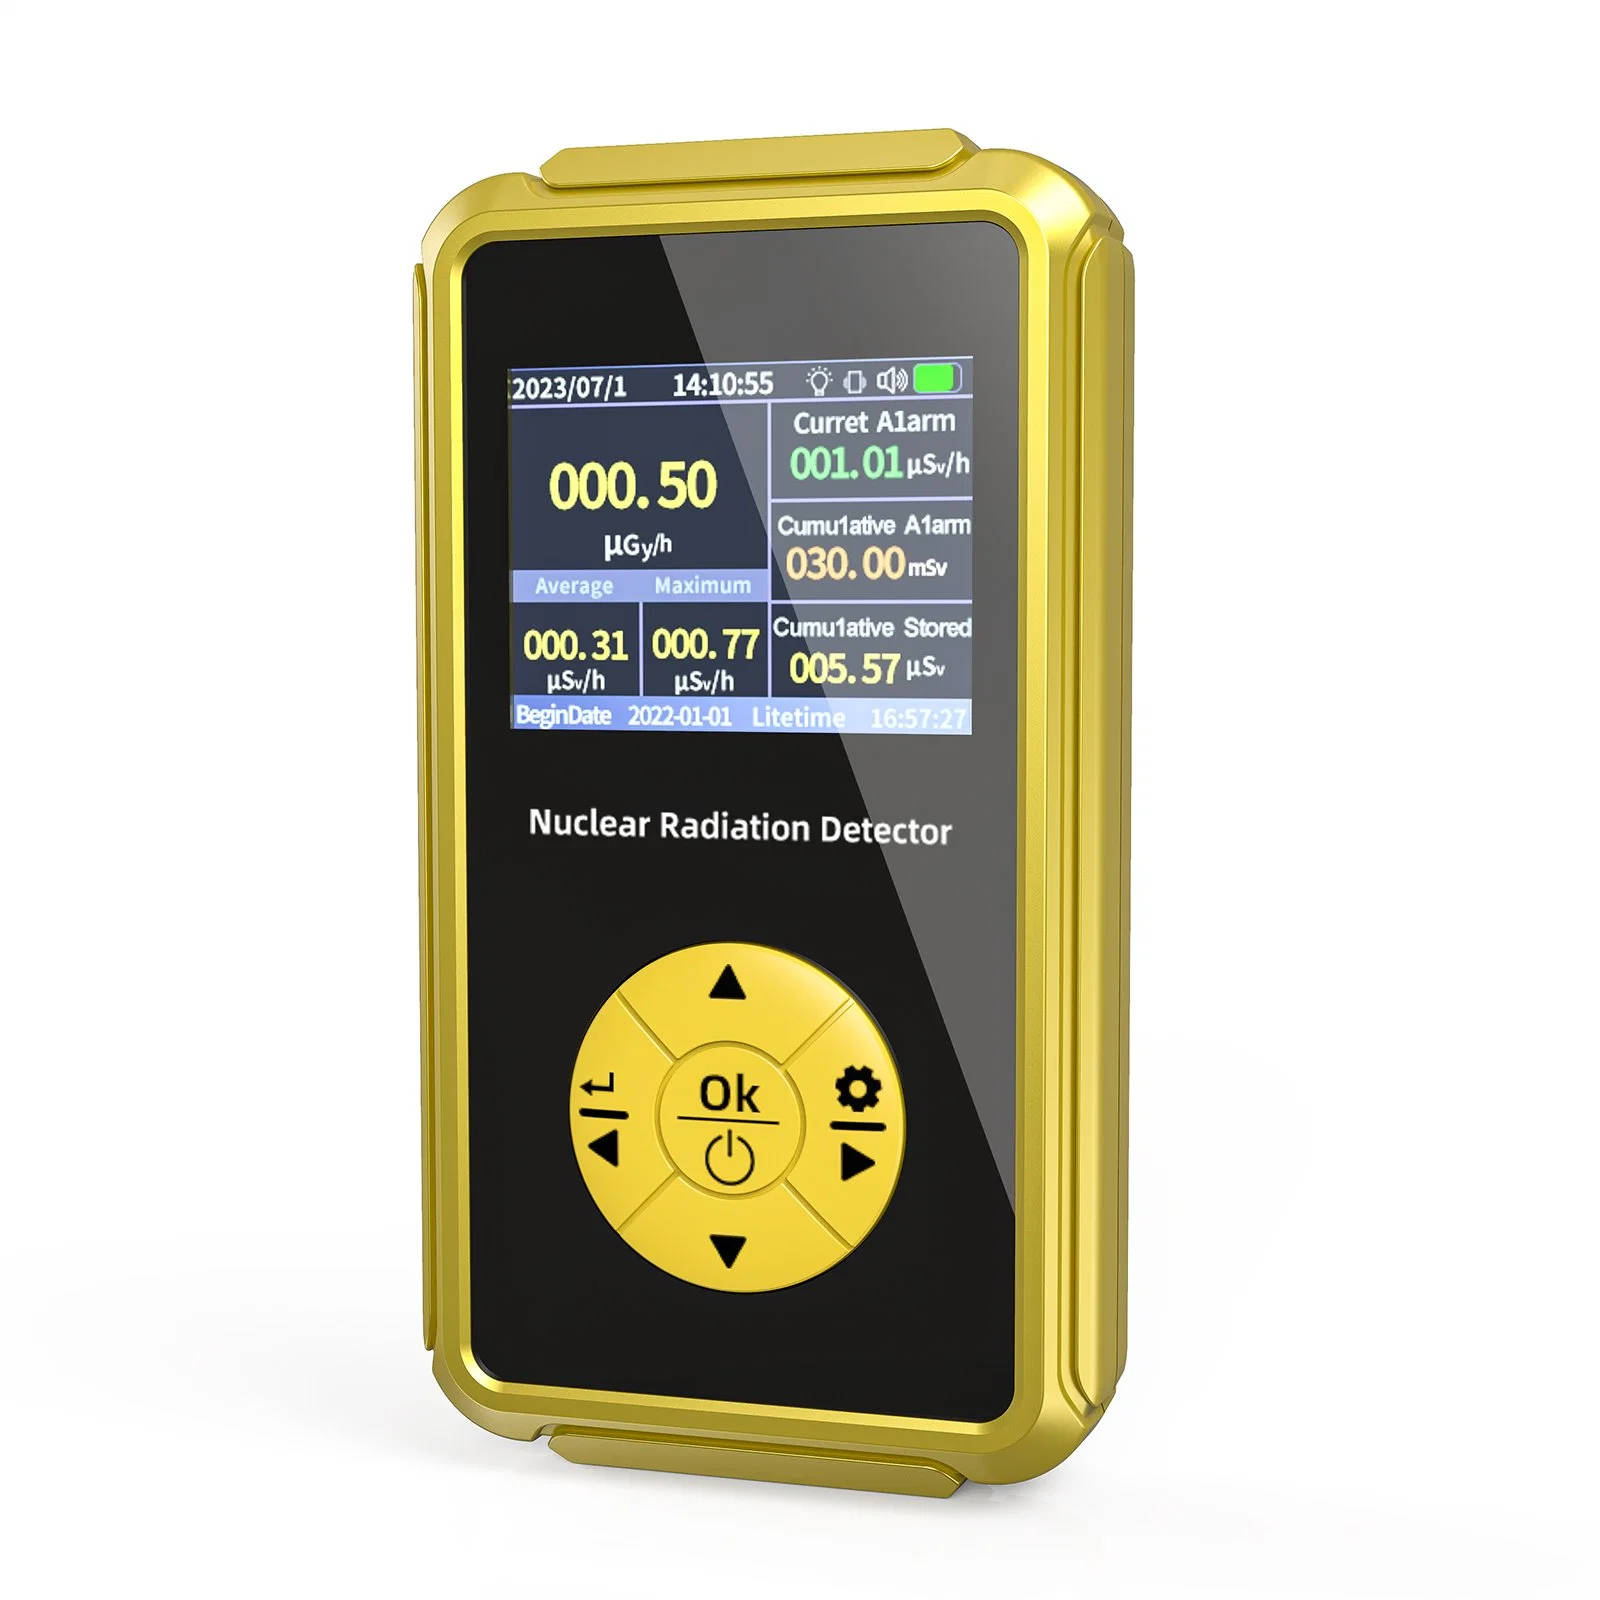 Neues Modell Gold Safety Protection X Y und B Strahlen Nukleare Lebensmittelstrahlungsmessgerät Detektor Dosimeter Geiger Muller Zählradiometer Für Strahlungsmessungen